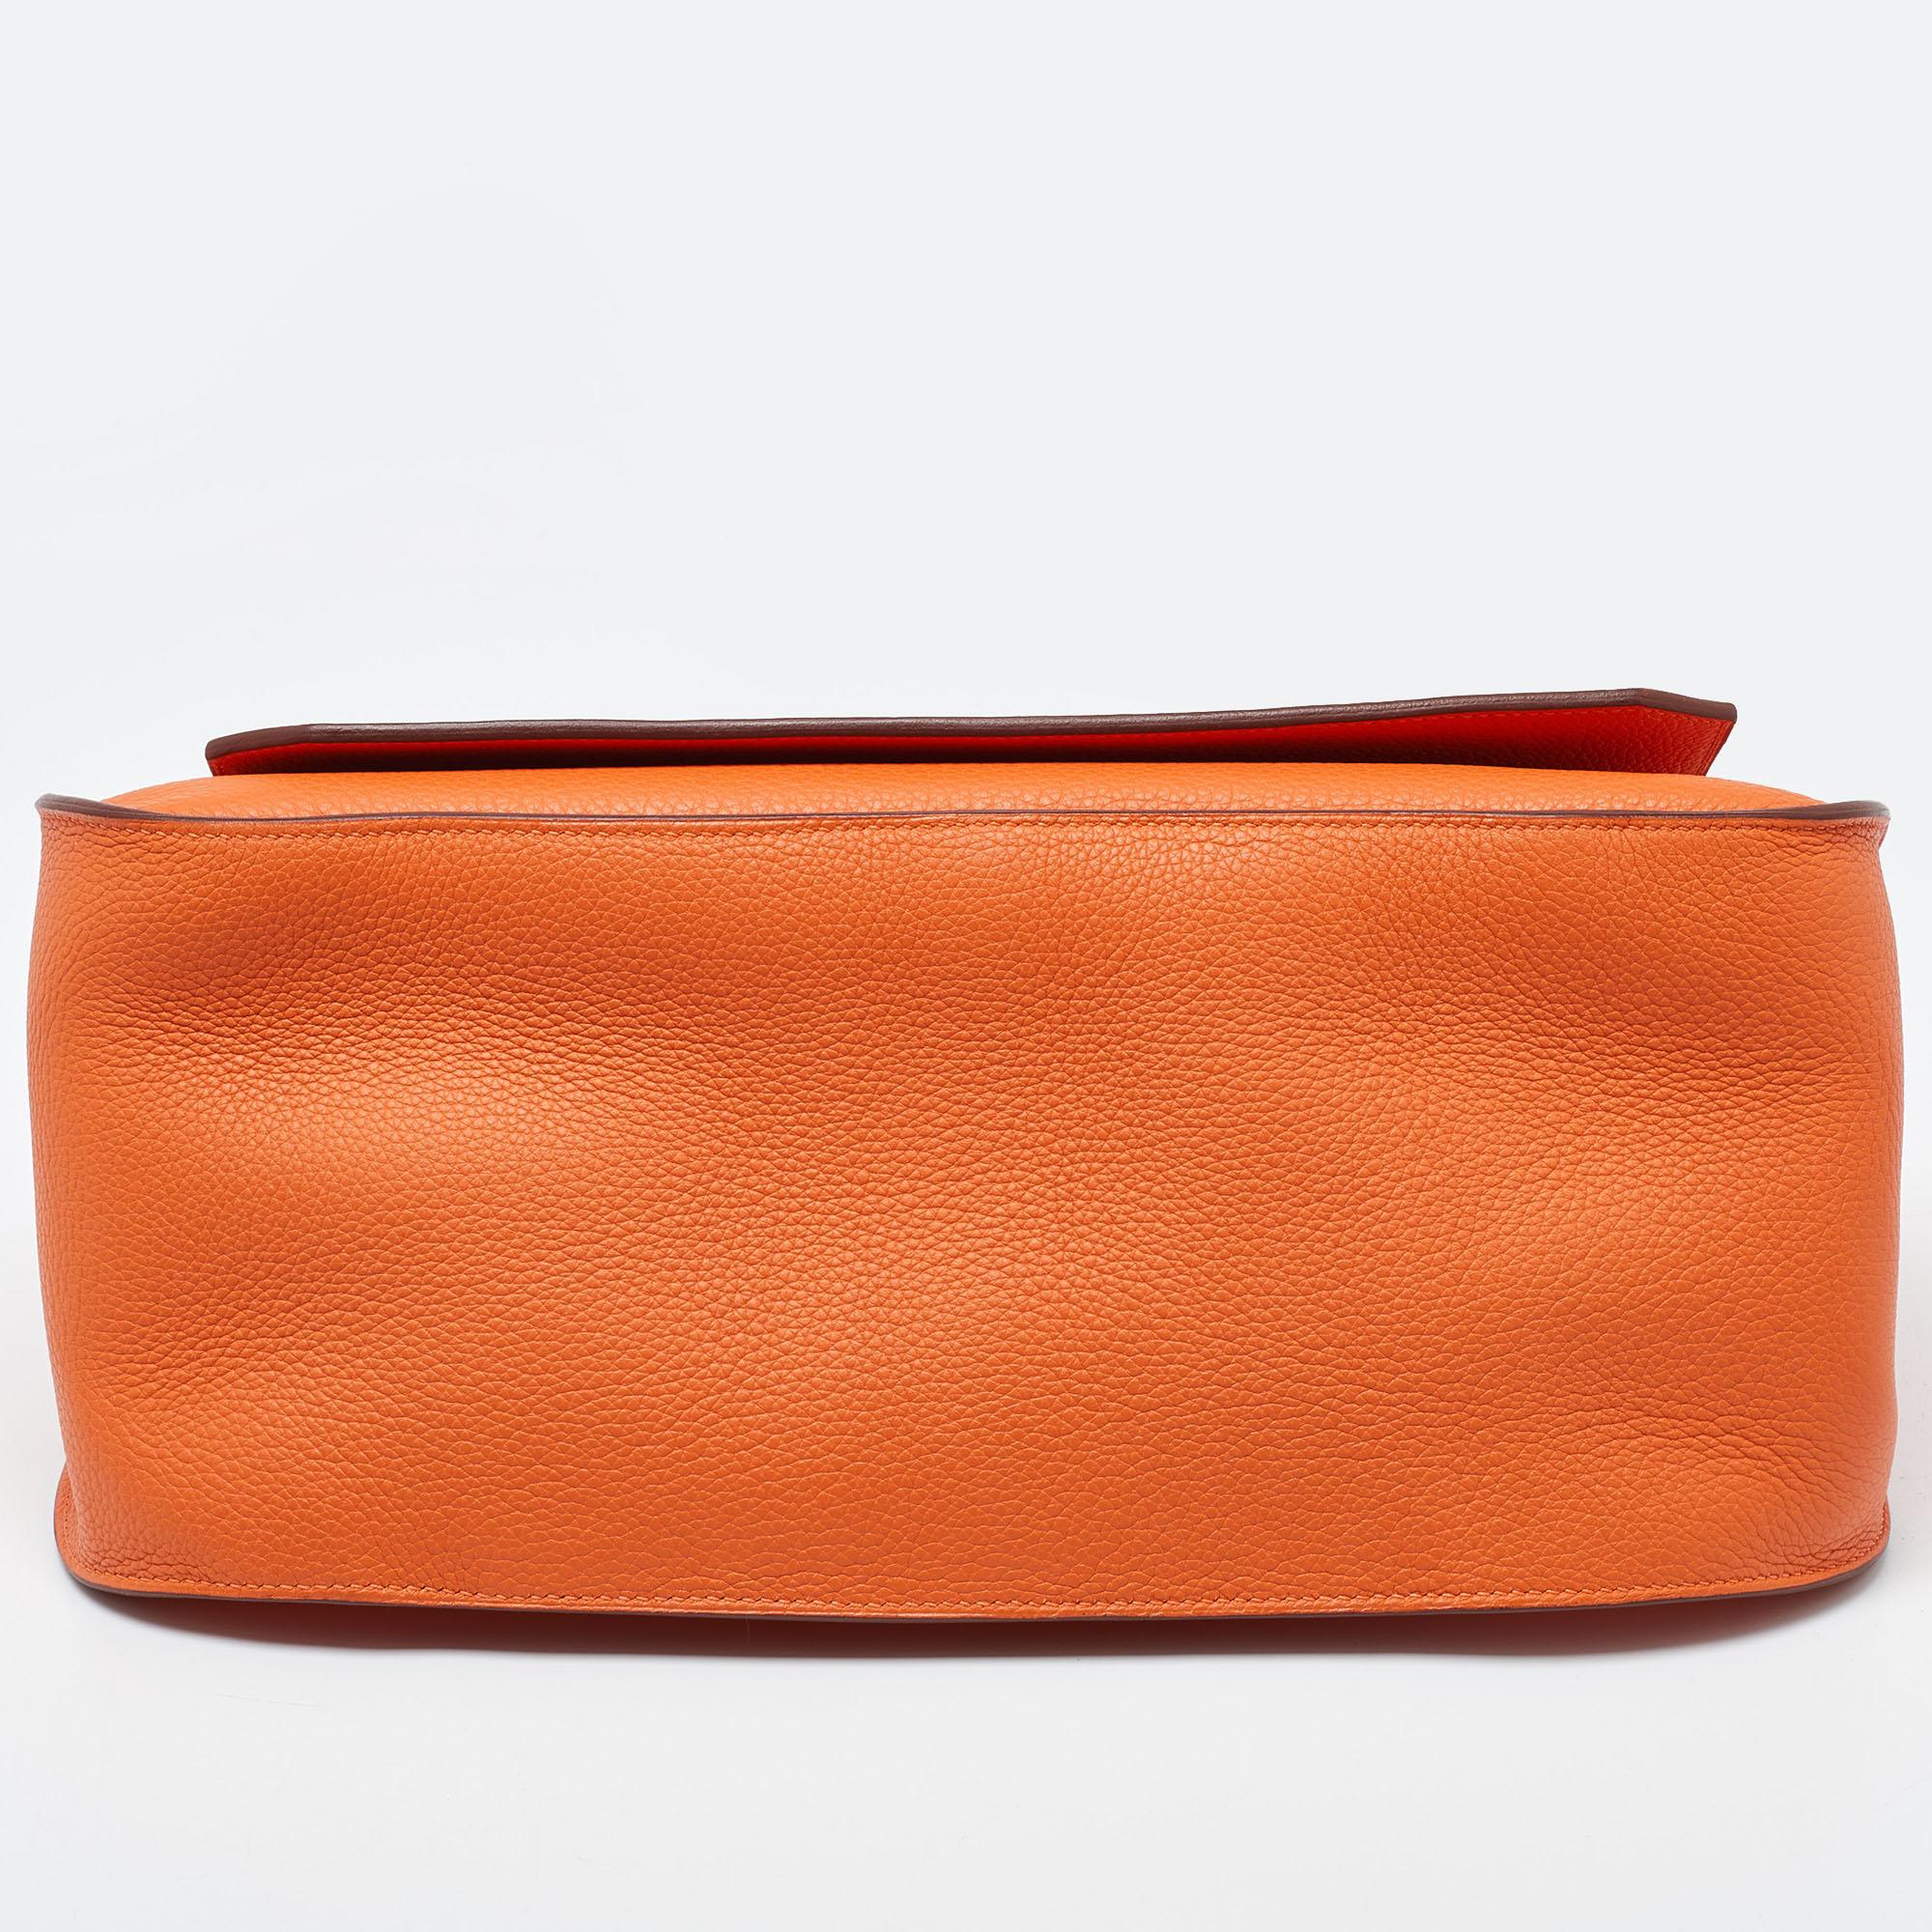 Hermès Orange Togo Leather Palladium Finish Jypsiere 37 Bag For Sale 1